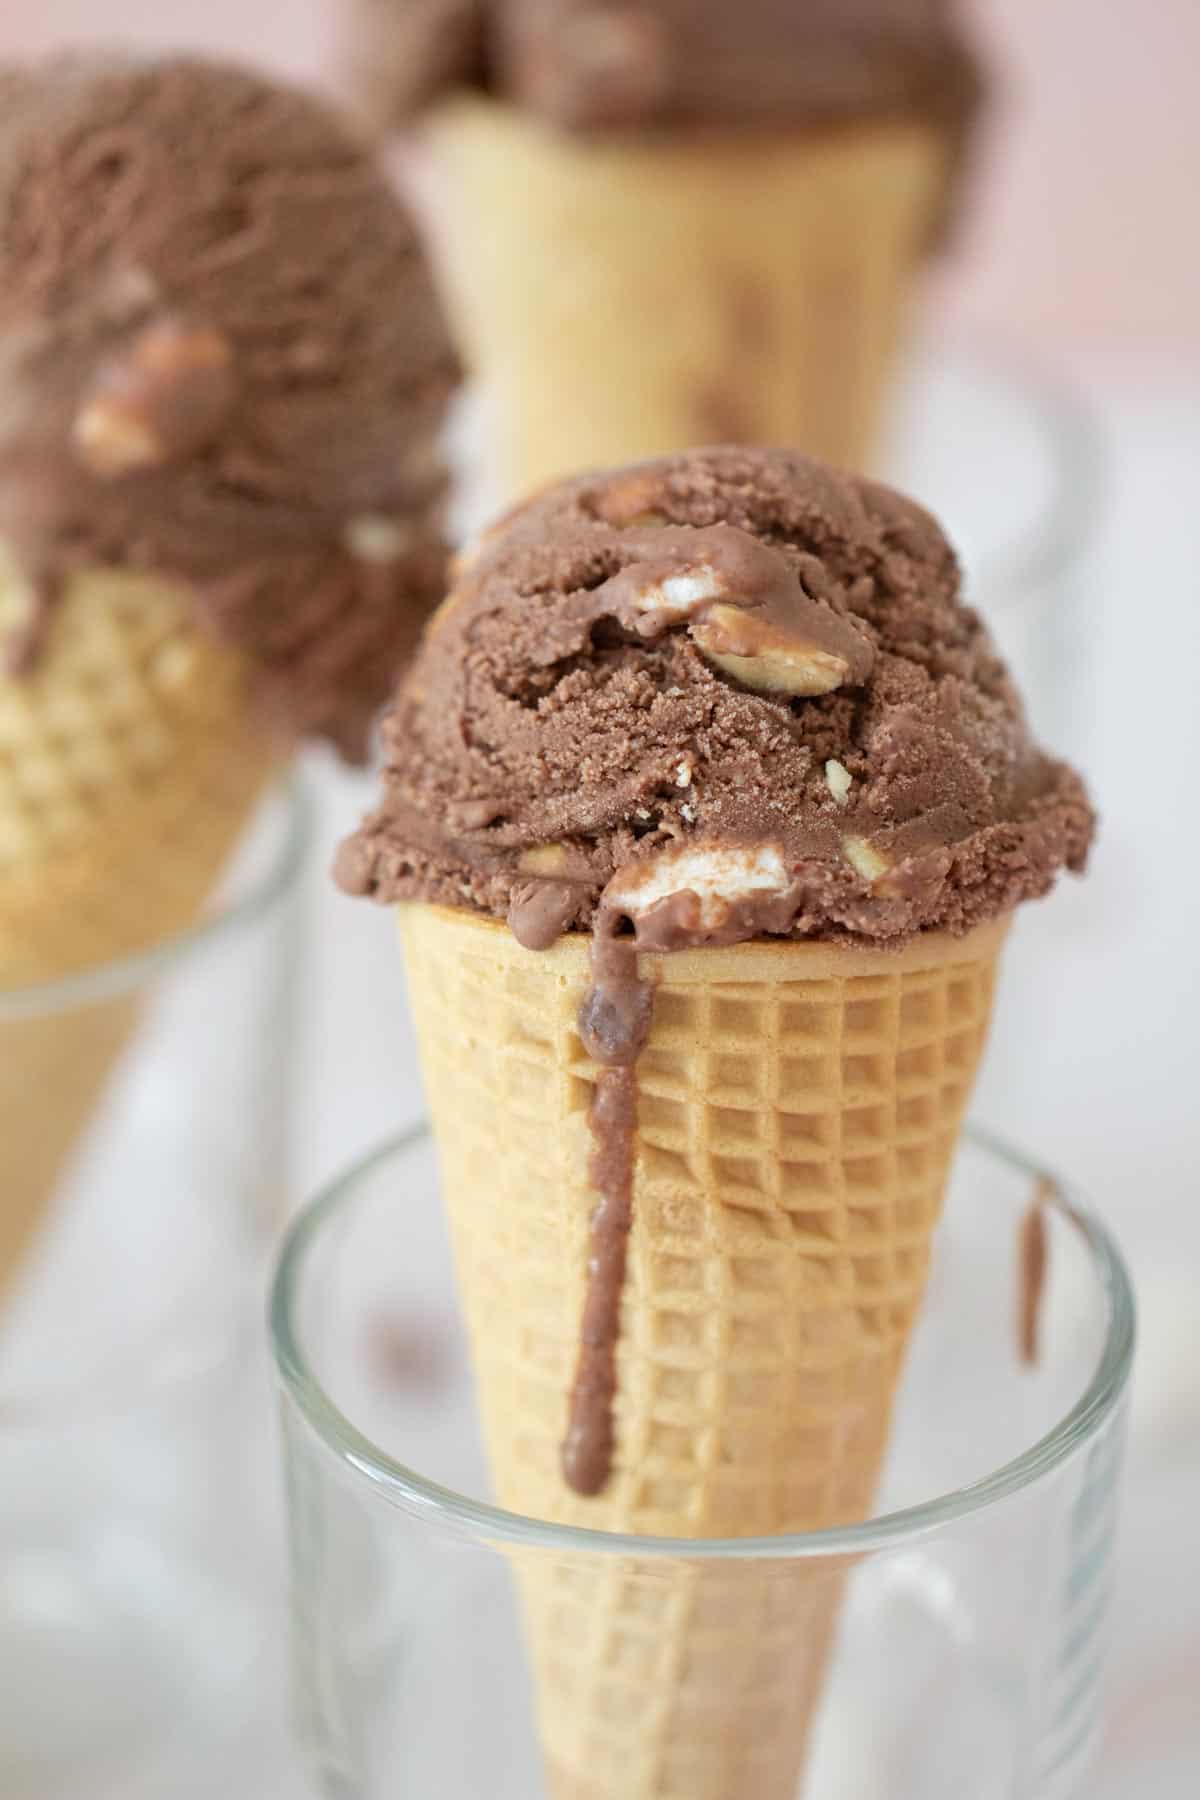 rocky road ice cream in a cone